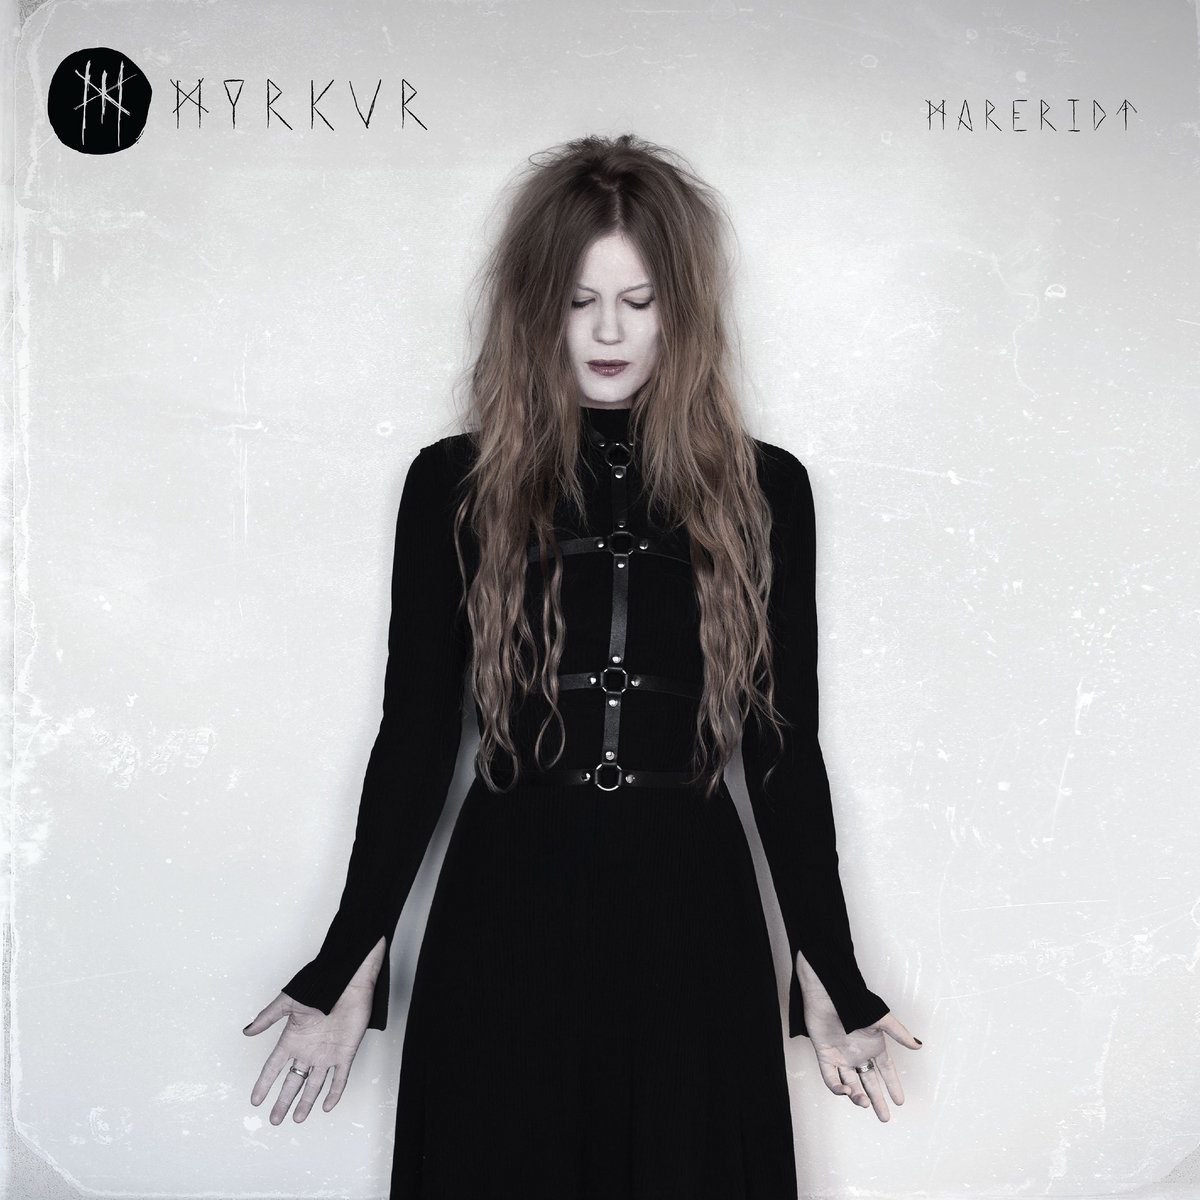 Myrkur - "Mareridt" Deluxe Edition - 2017